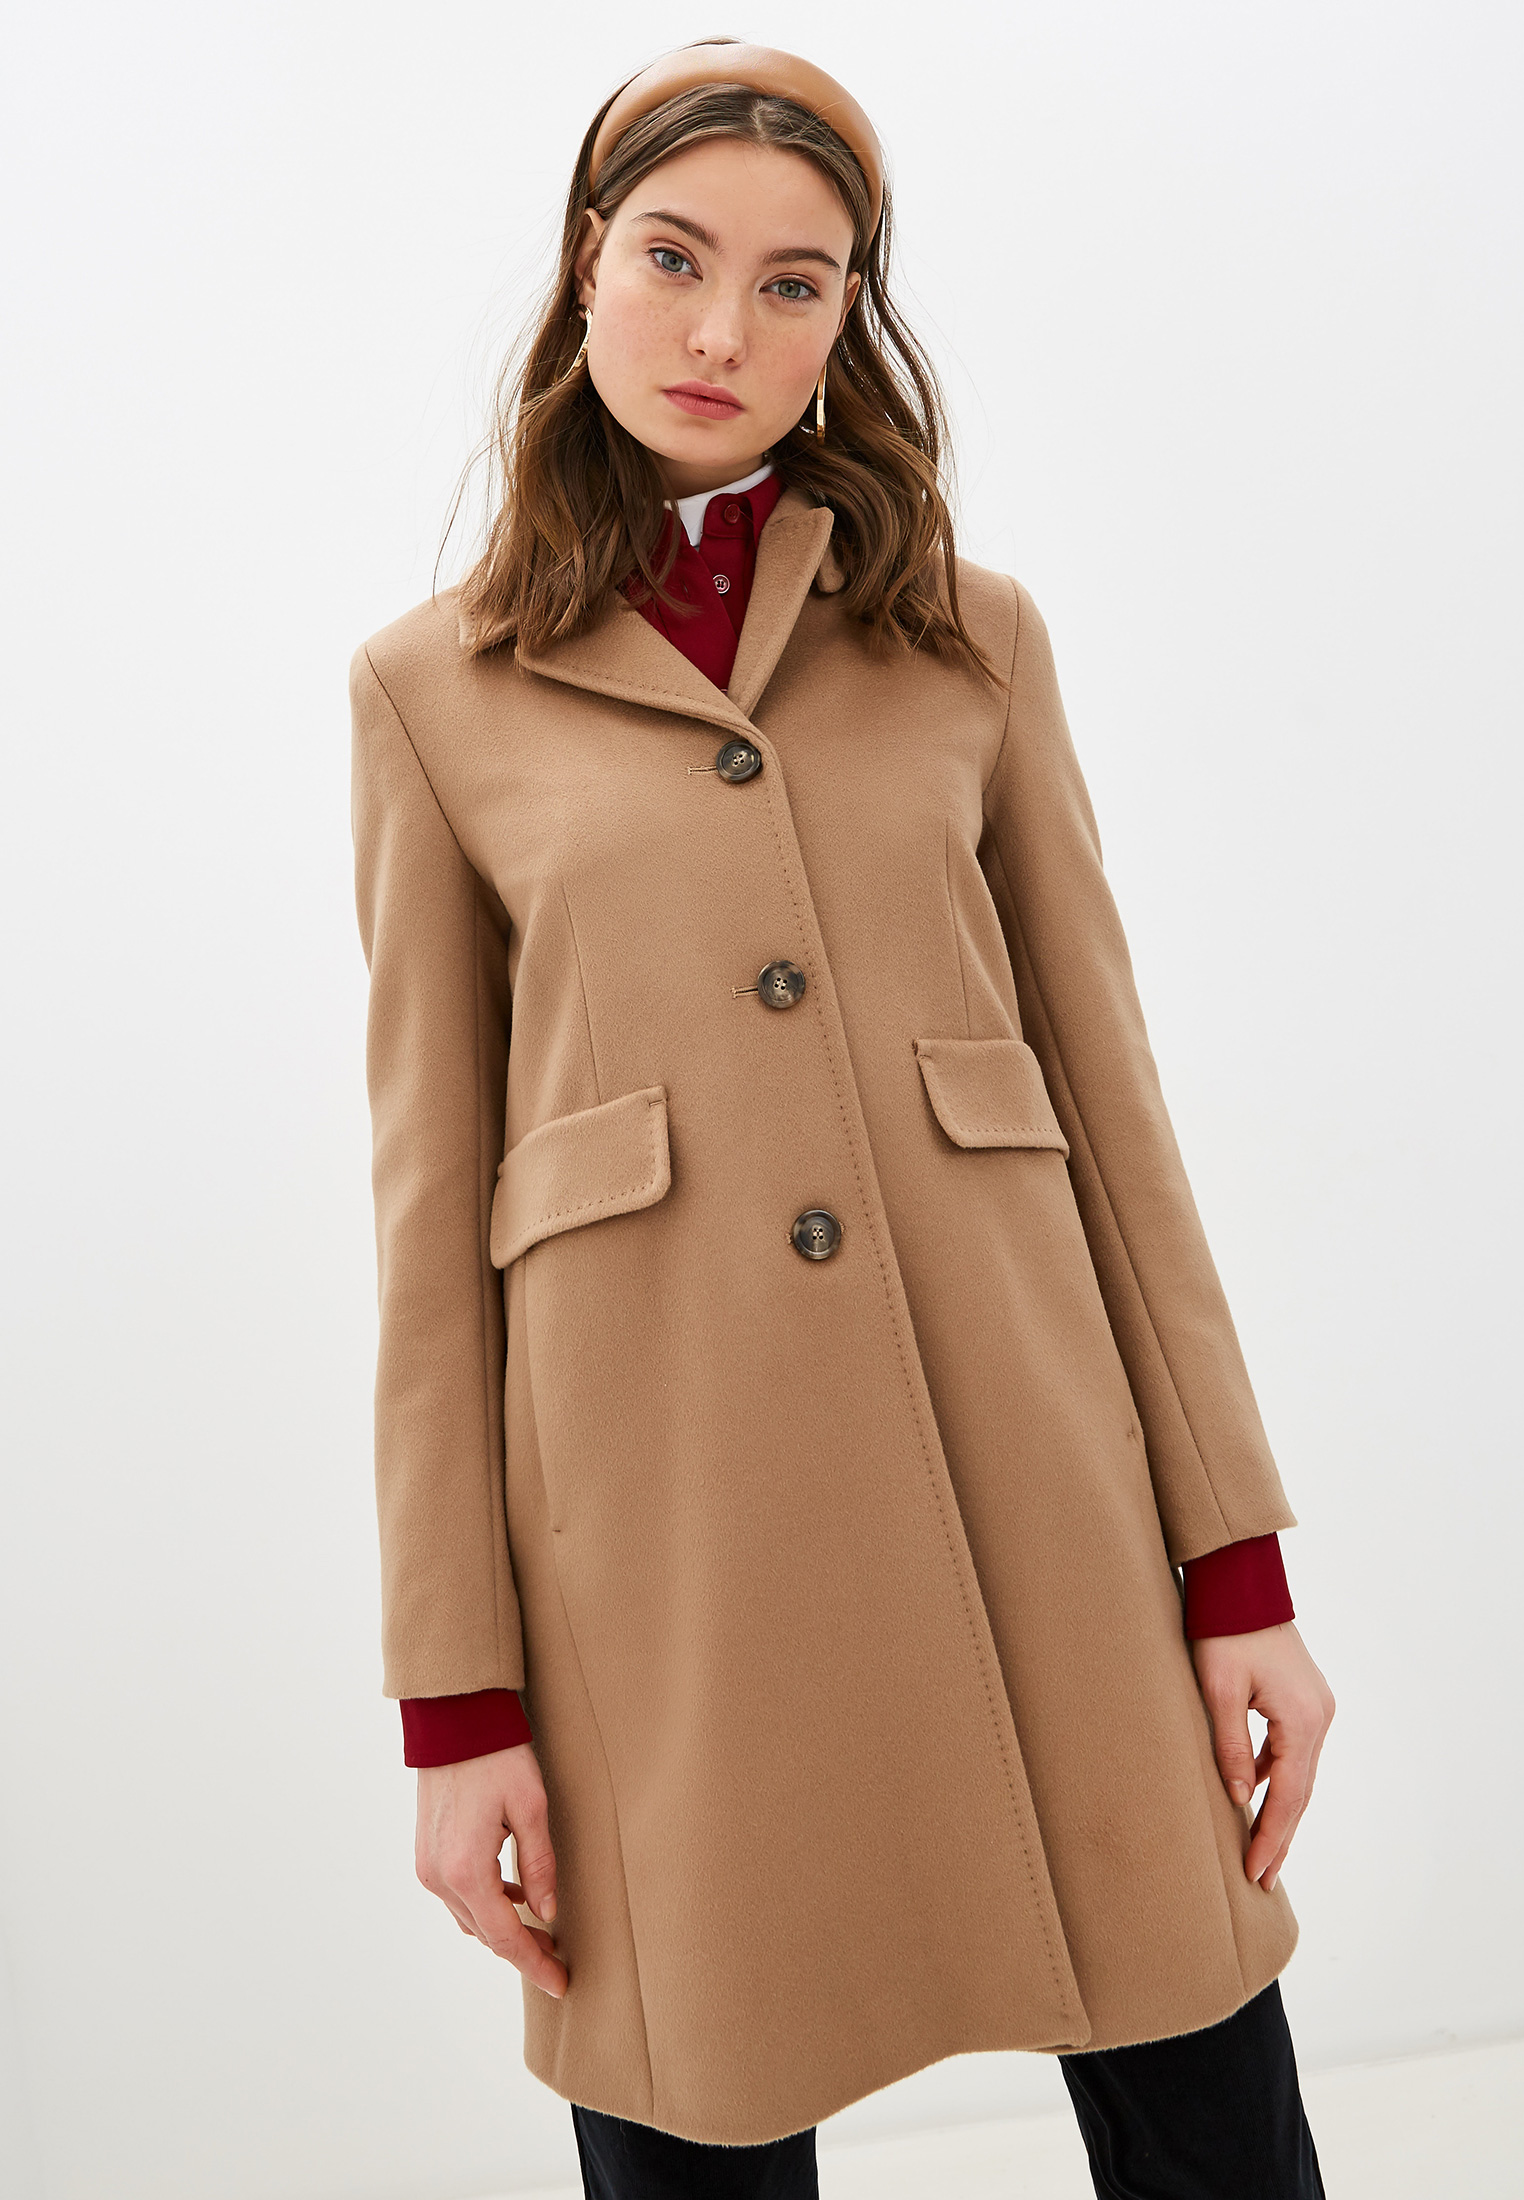 Пальто Weekend Max Mara, цвет: бежевый, WE017EWGKQW1 — купить в  интернет-магазине Lamoda